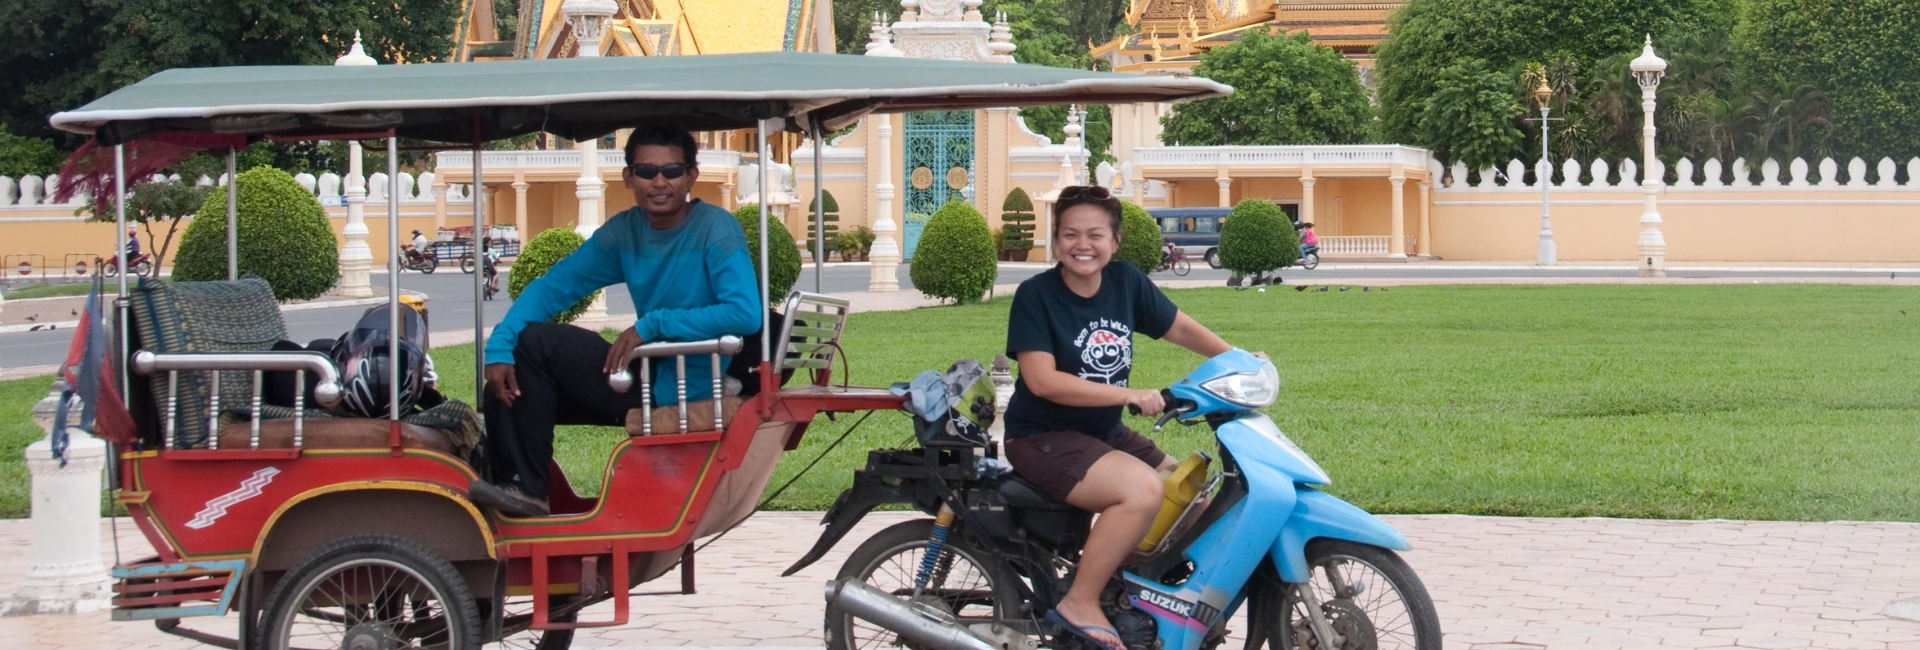 Phnom Penh Tuk Tuk: Complete Travel Guide & Travel Tips For The Best Khmer experiences